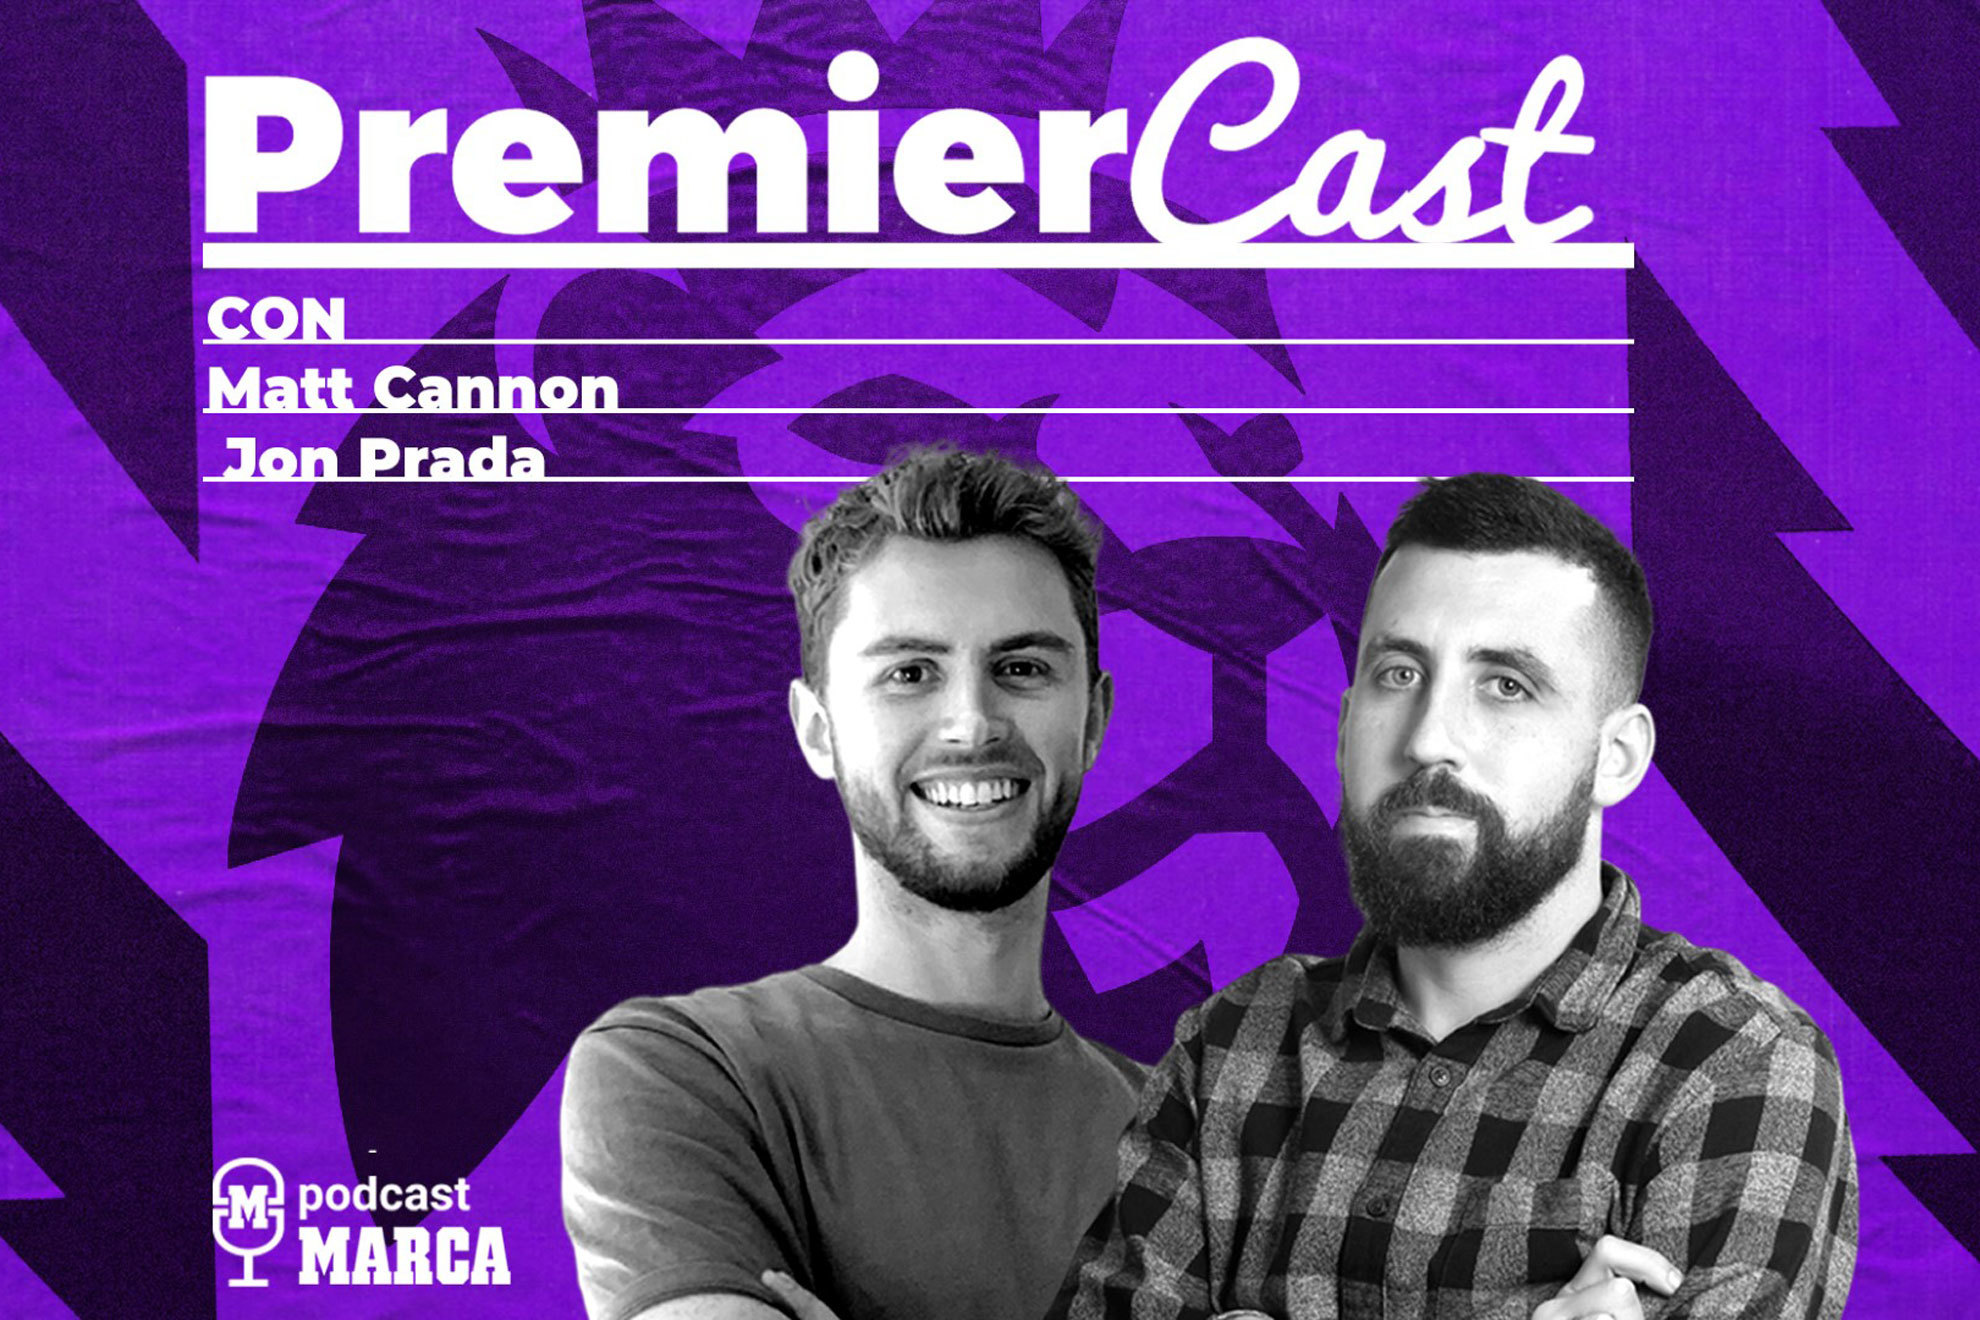 Escucha ya Porque esto es frica... y Asia, el cuarto episodio de PremierCast, tu Podcast MARCA de la Premier